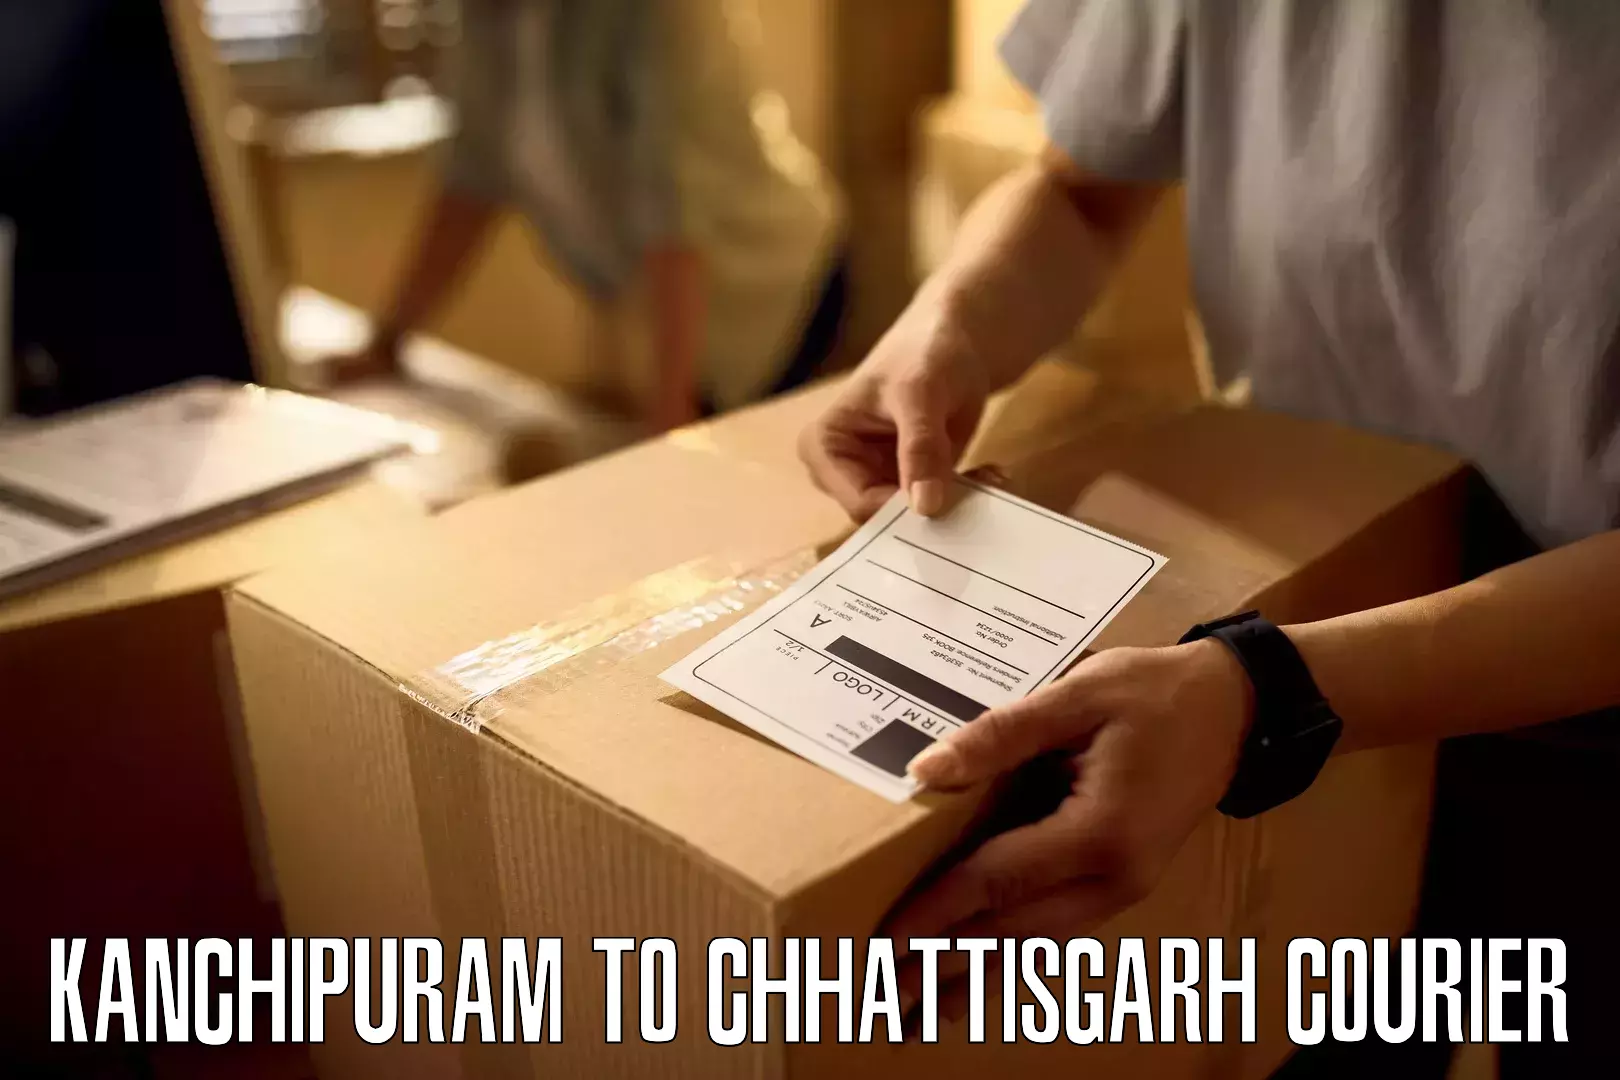 Full-service courier options Kanchipuram to Pendra